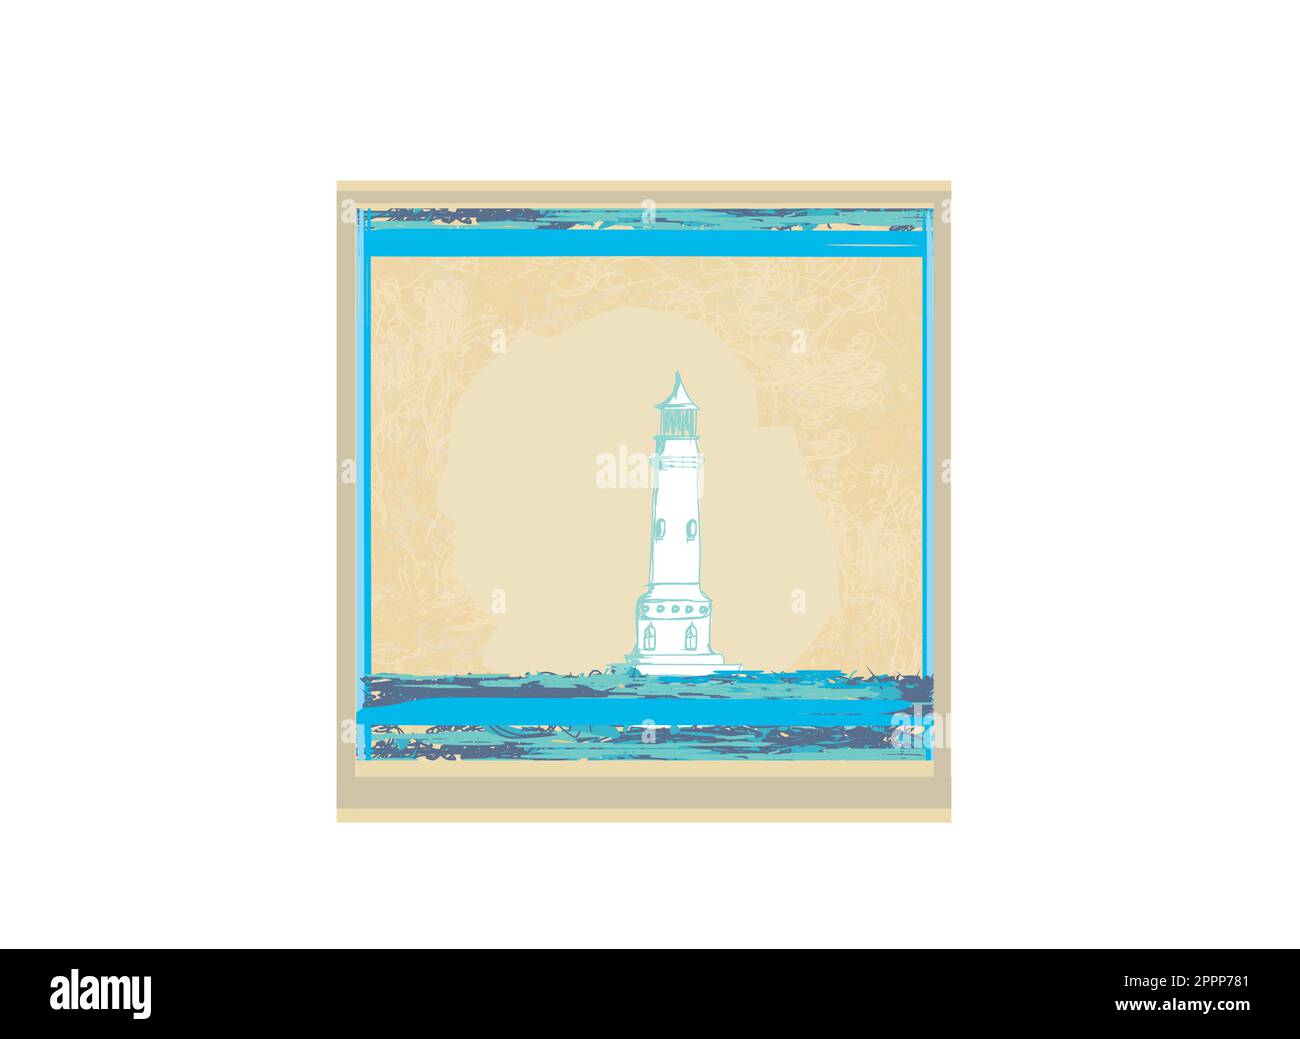 Vu d'un petit phare beach - Grunge Poster Illustration de Vecteur